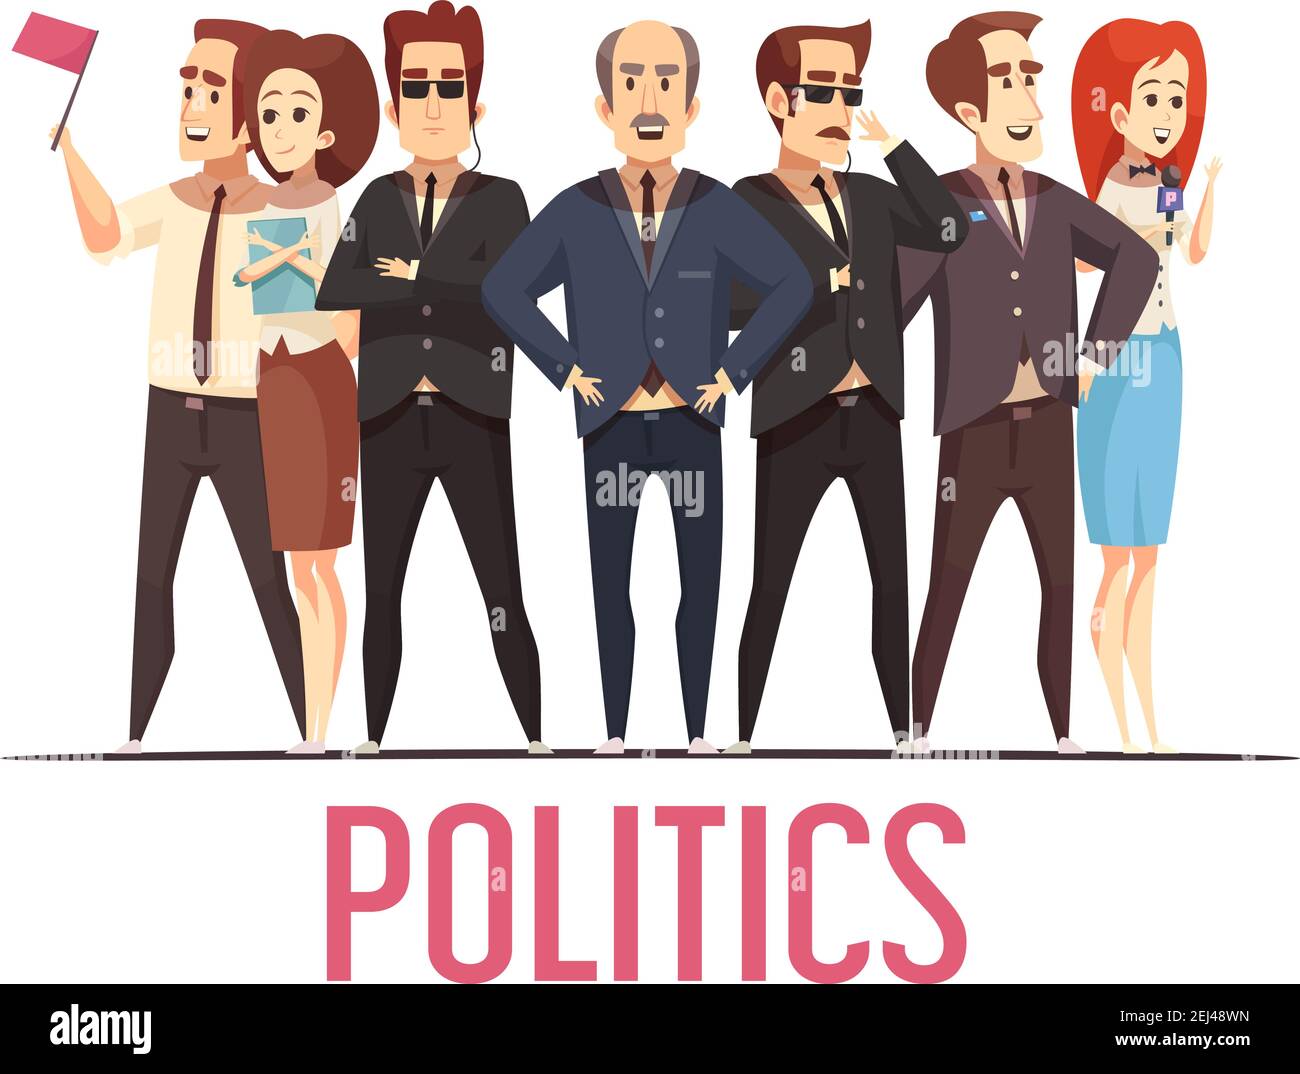 Politische Wahlkampagne führende Kandidaten öffentlichen Auftritt mit Bodyguards und Ehepartner Cartoon Figuren Komposition Poster Vektor Illustration Stock Vektor